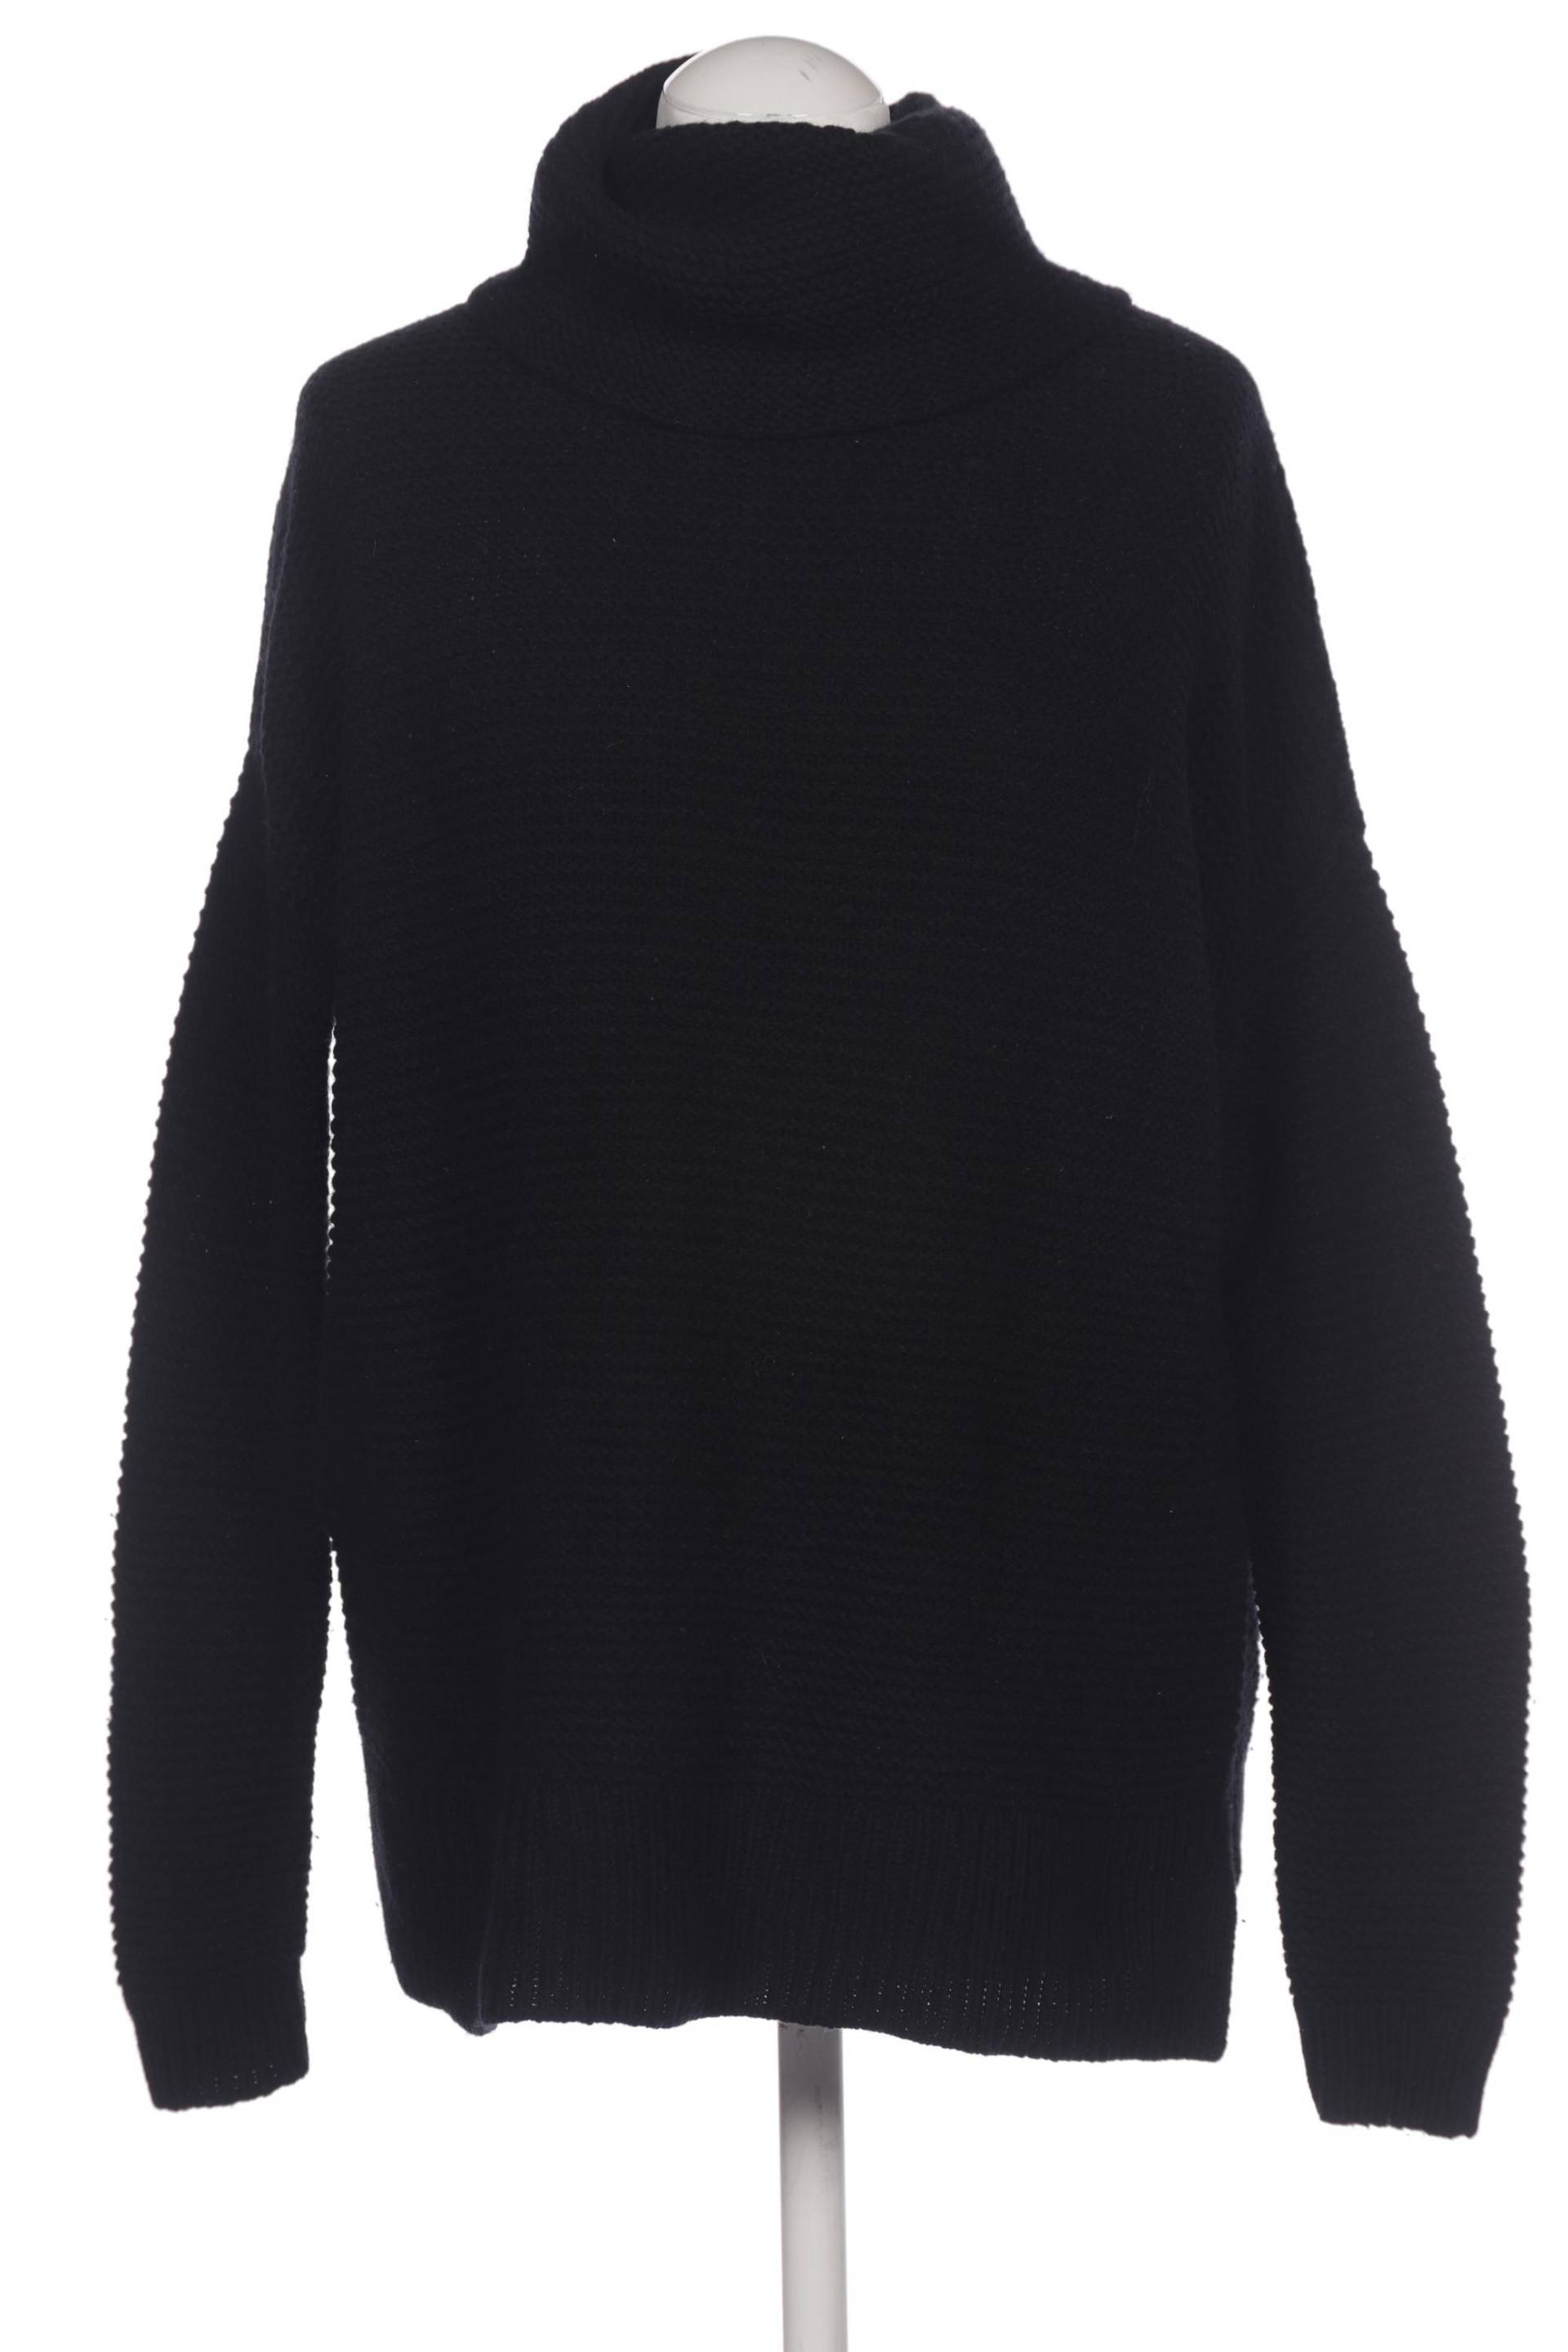 Boden Damen Pullover, schwarz, Gr. 36 von Boden